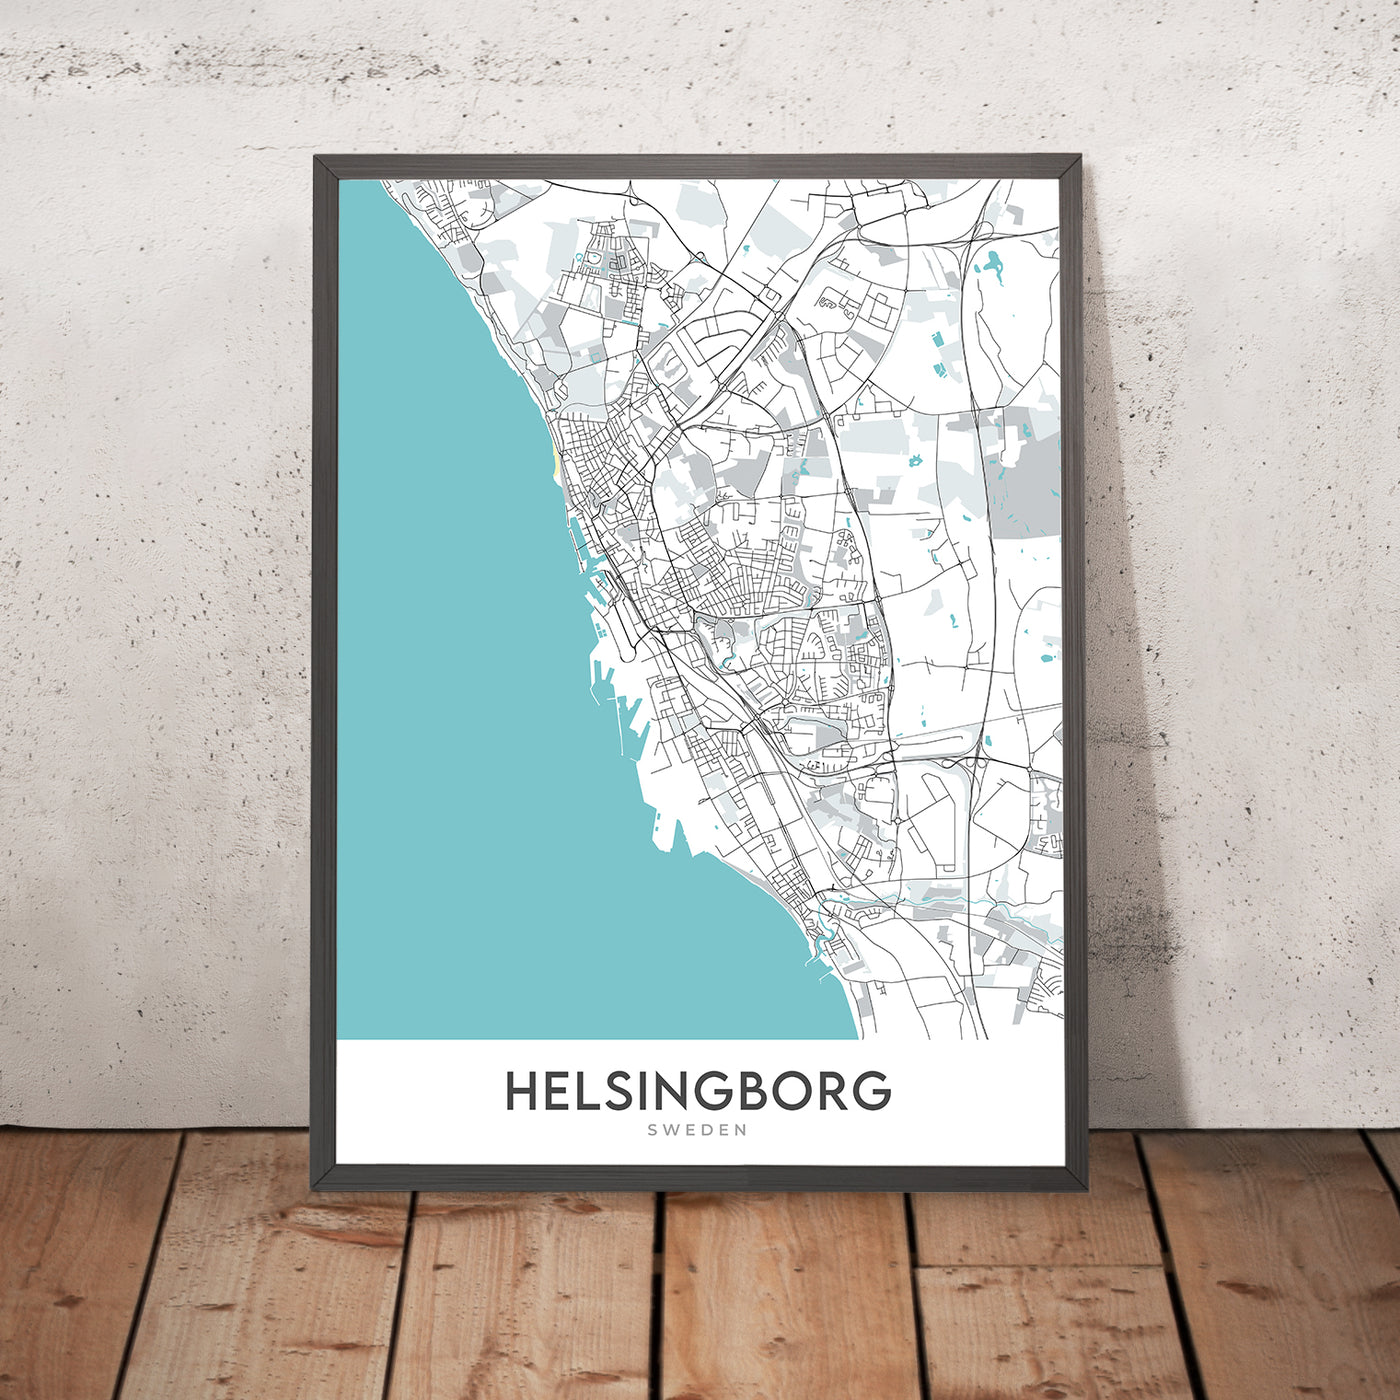 Plan de la ville moderne d'Helsingborg, Suède : Centrum, Ramlösa, Château d'Helsingborg, Château de Sofiero, E4